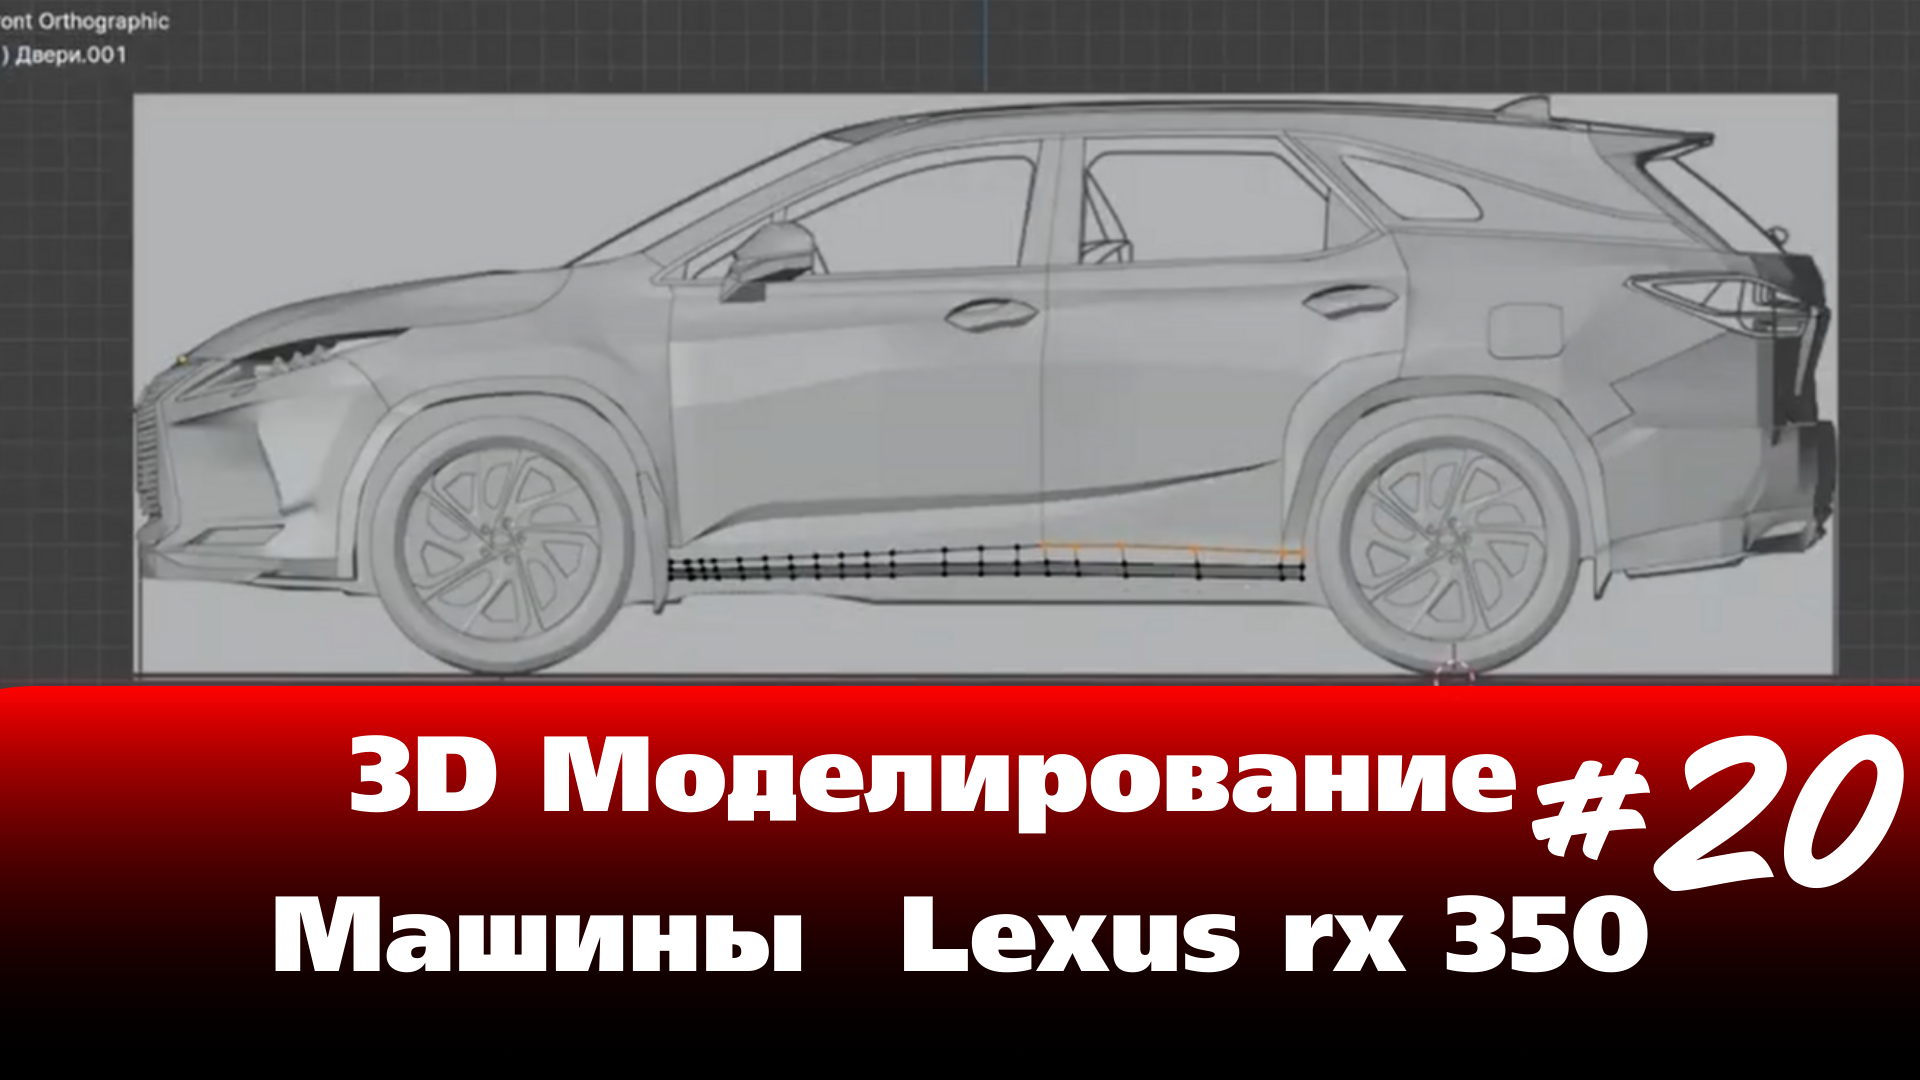 3D Моделирование Машины в Blender - Lexus rx 350 часть 20